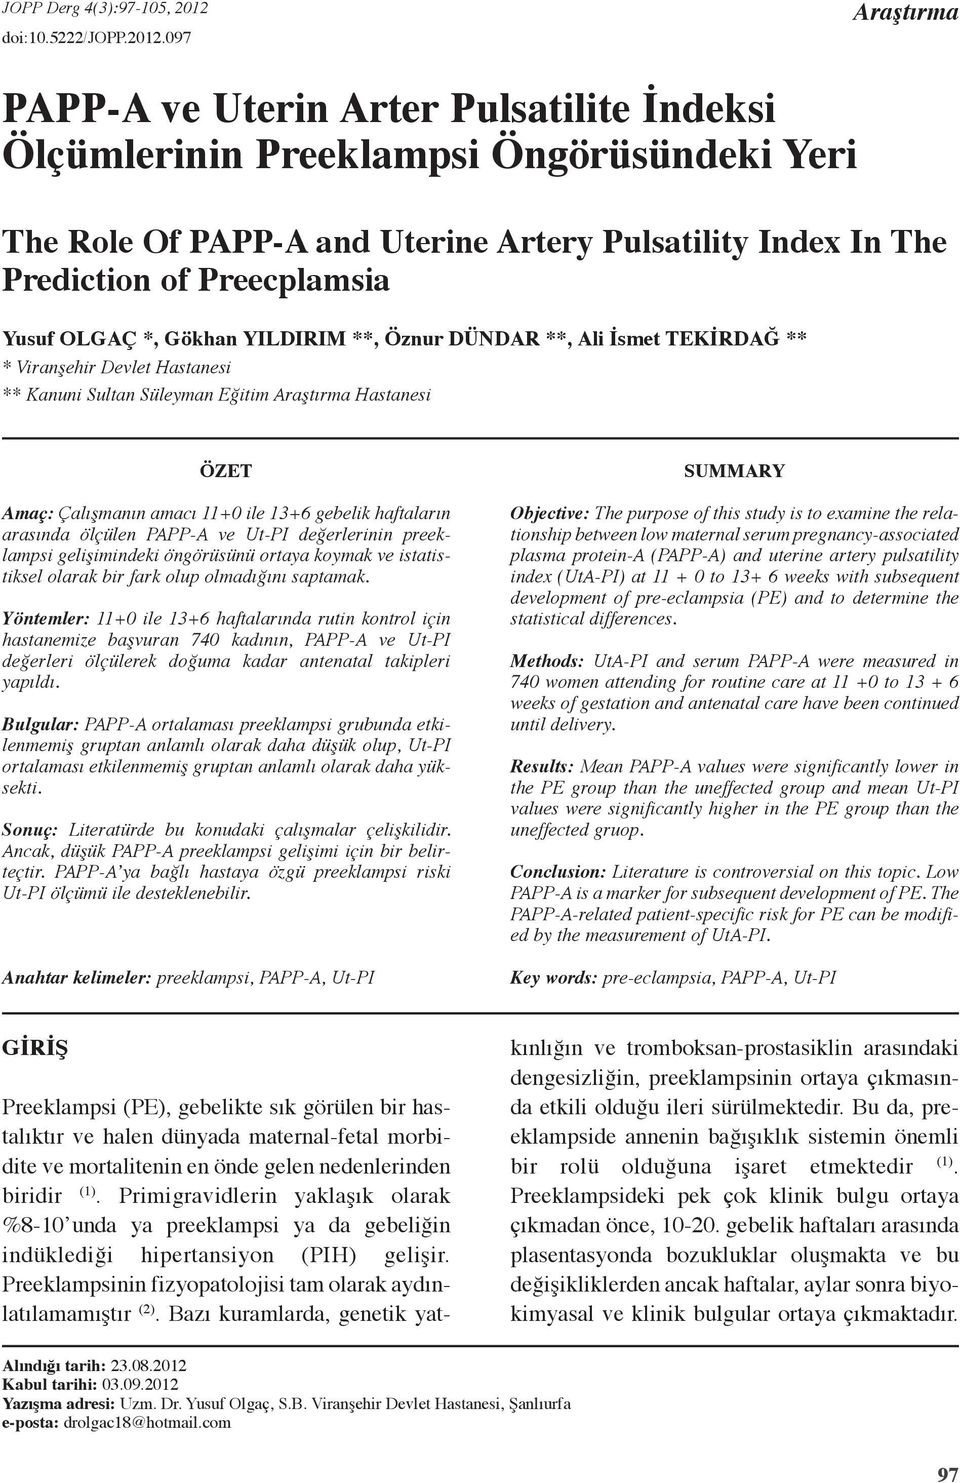 097 Araştırma PAPP-A ve Uterin Arter Pulsatilite İndeksi Ölçümlerinin Preeklampsi Öngörüsündeki Yeri The Role Of PAPP-A and Uterine Artery Pulsatility Index In The Prediction of Preecplamsia Yusuf